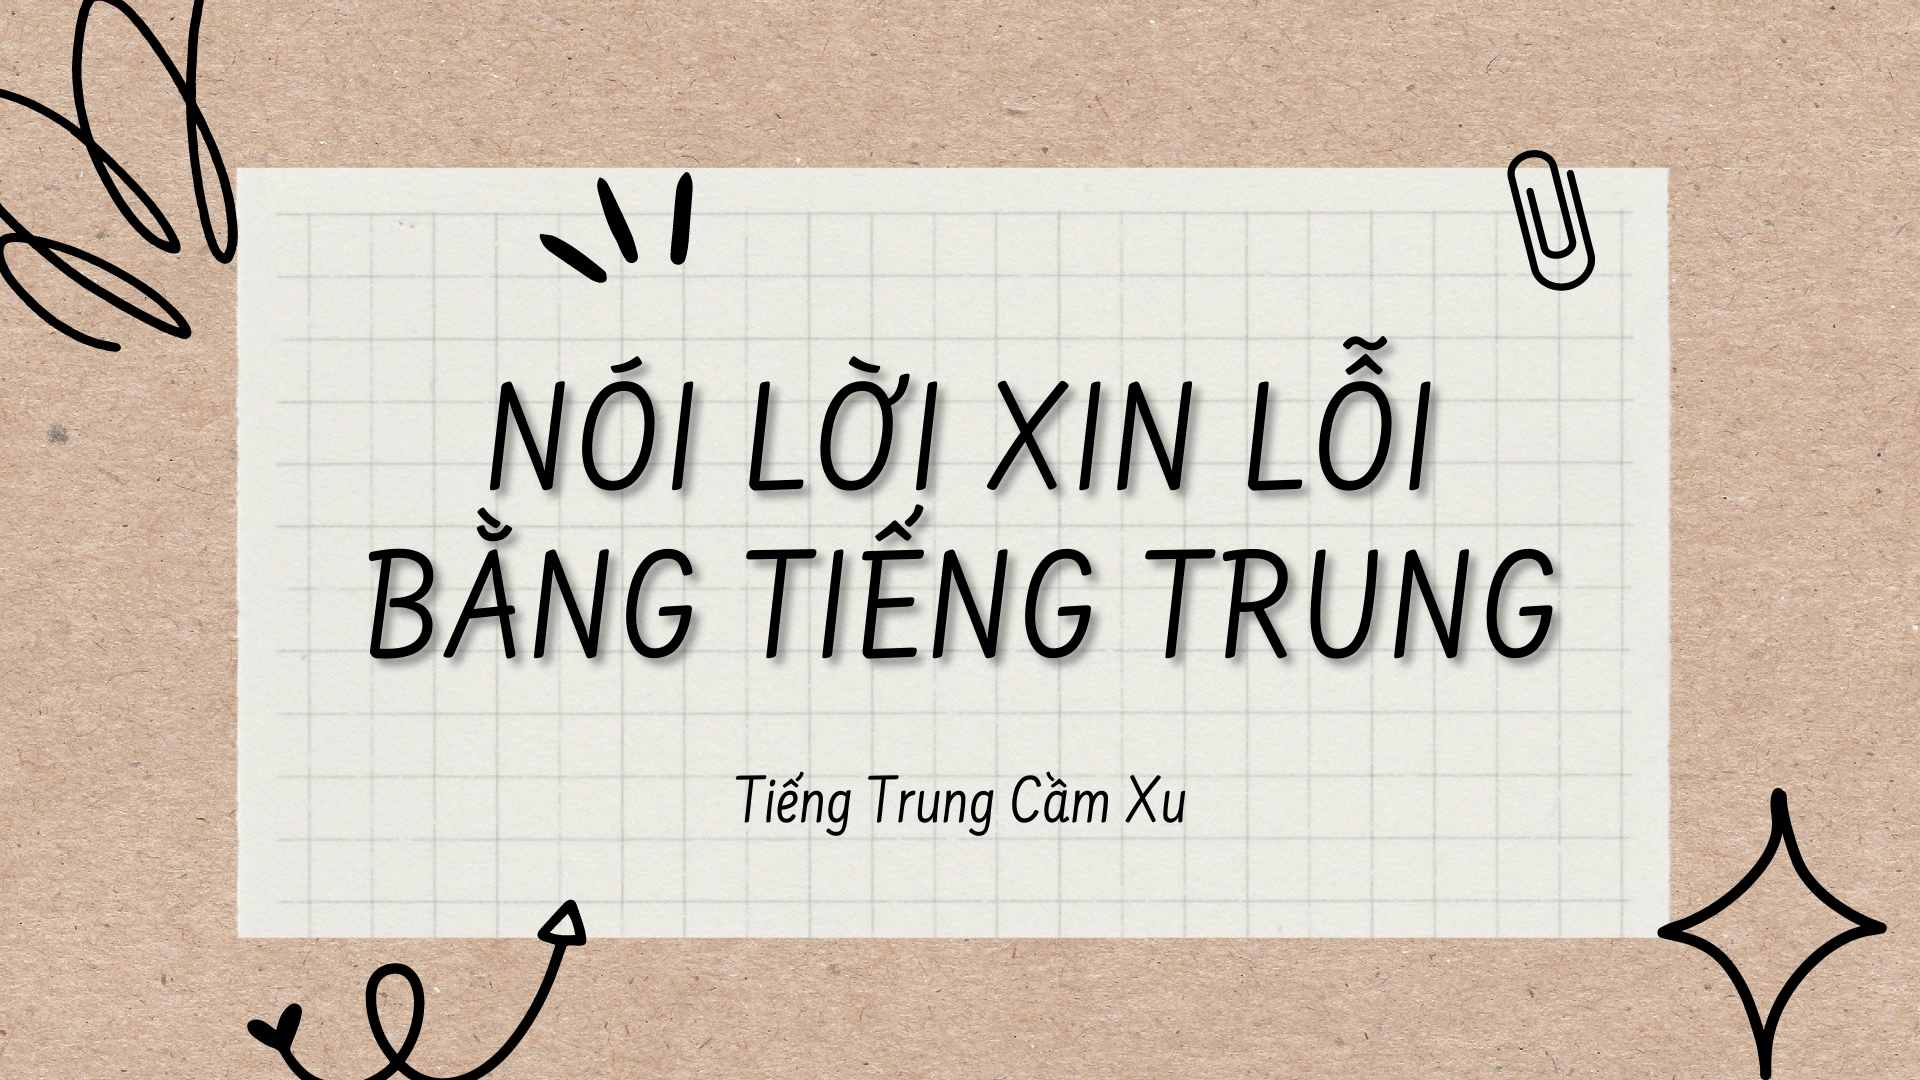 Cách nói lời xin lỗi bằng Tiếng Trung trong mọi trường hợp